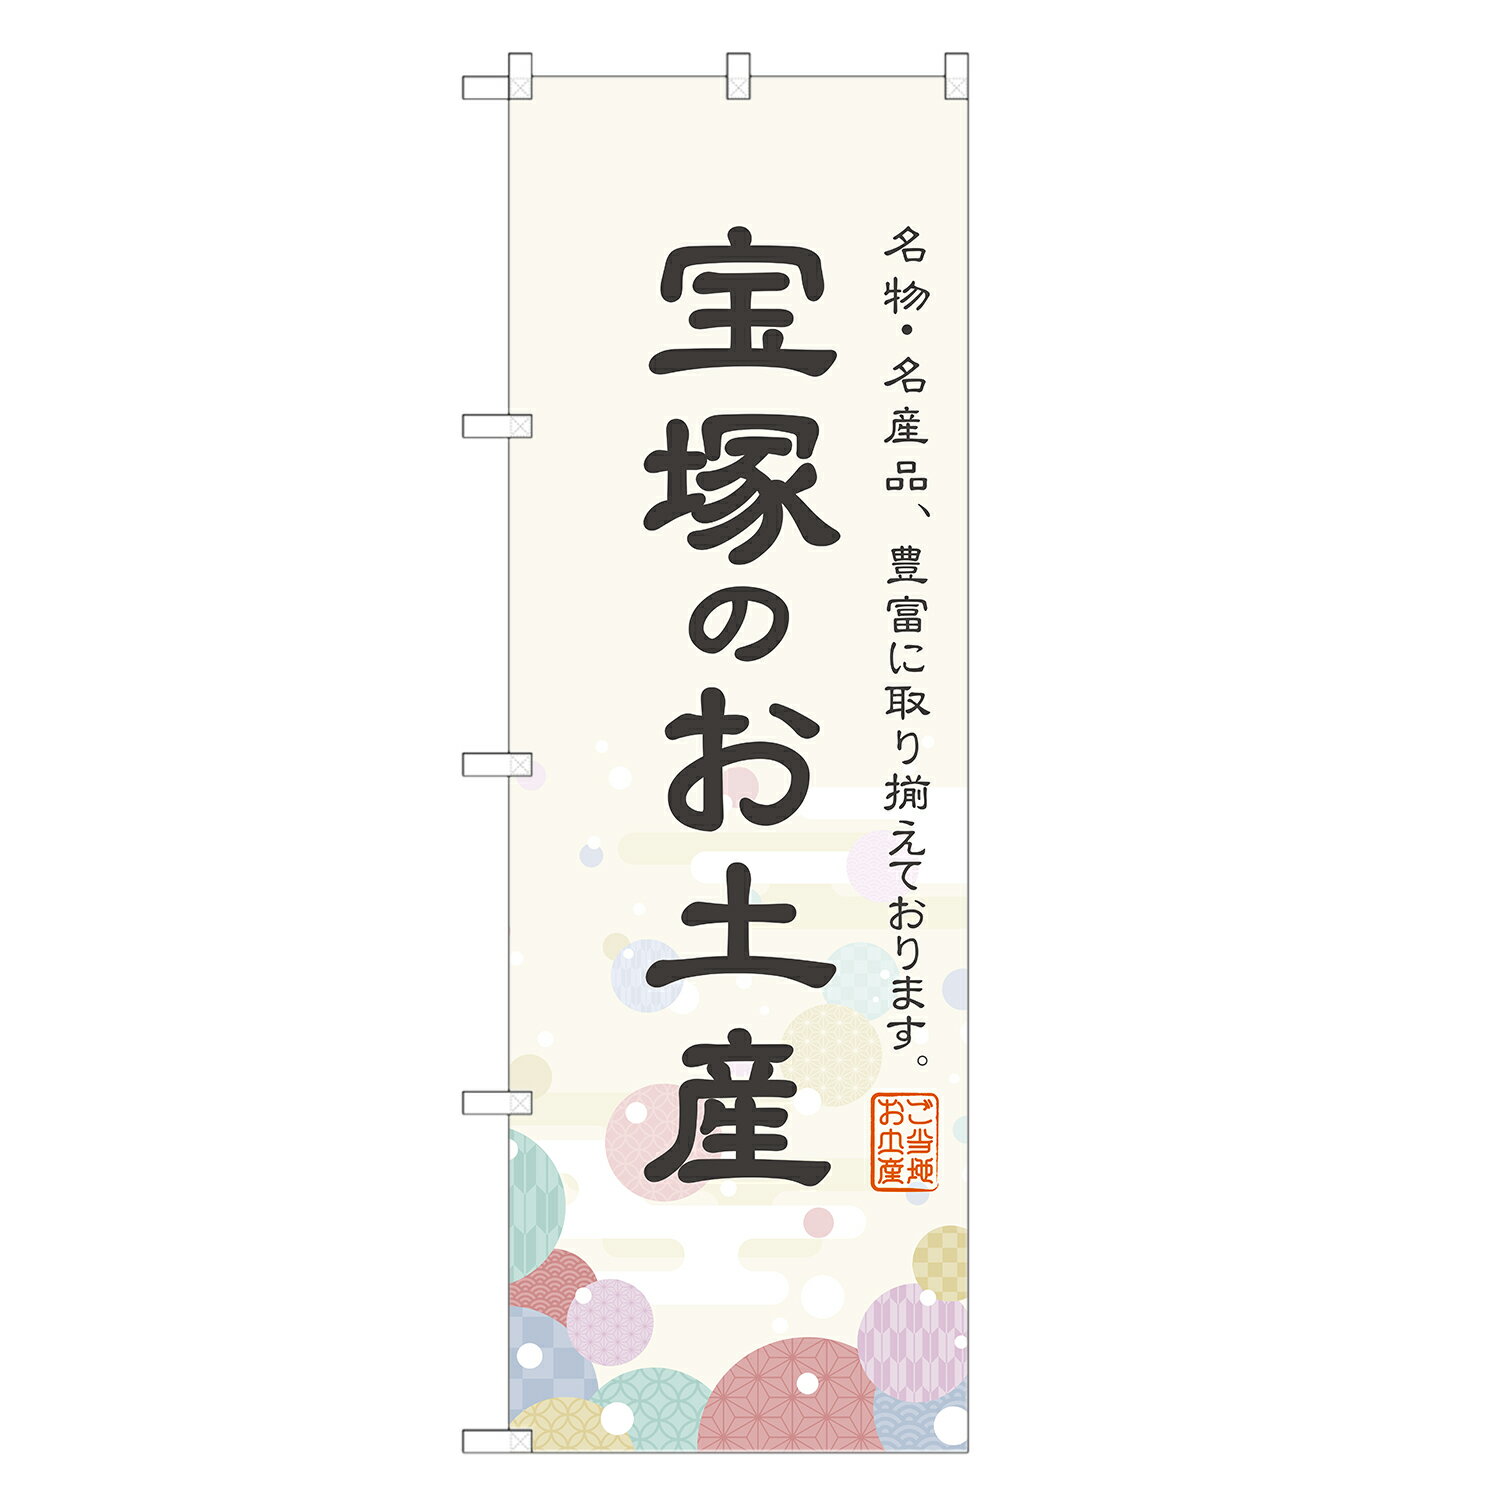 のぼり旗 宝塚のお土産 のぼり 四方三巻縫製 T09-0543A-R